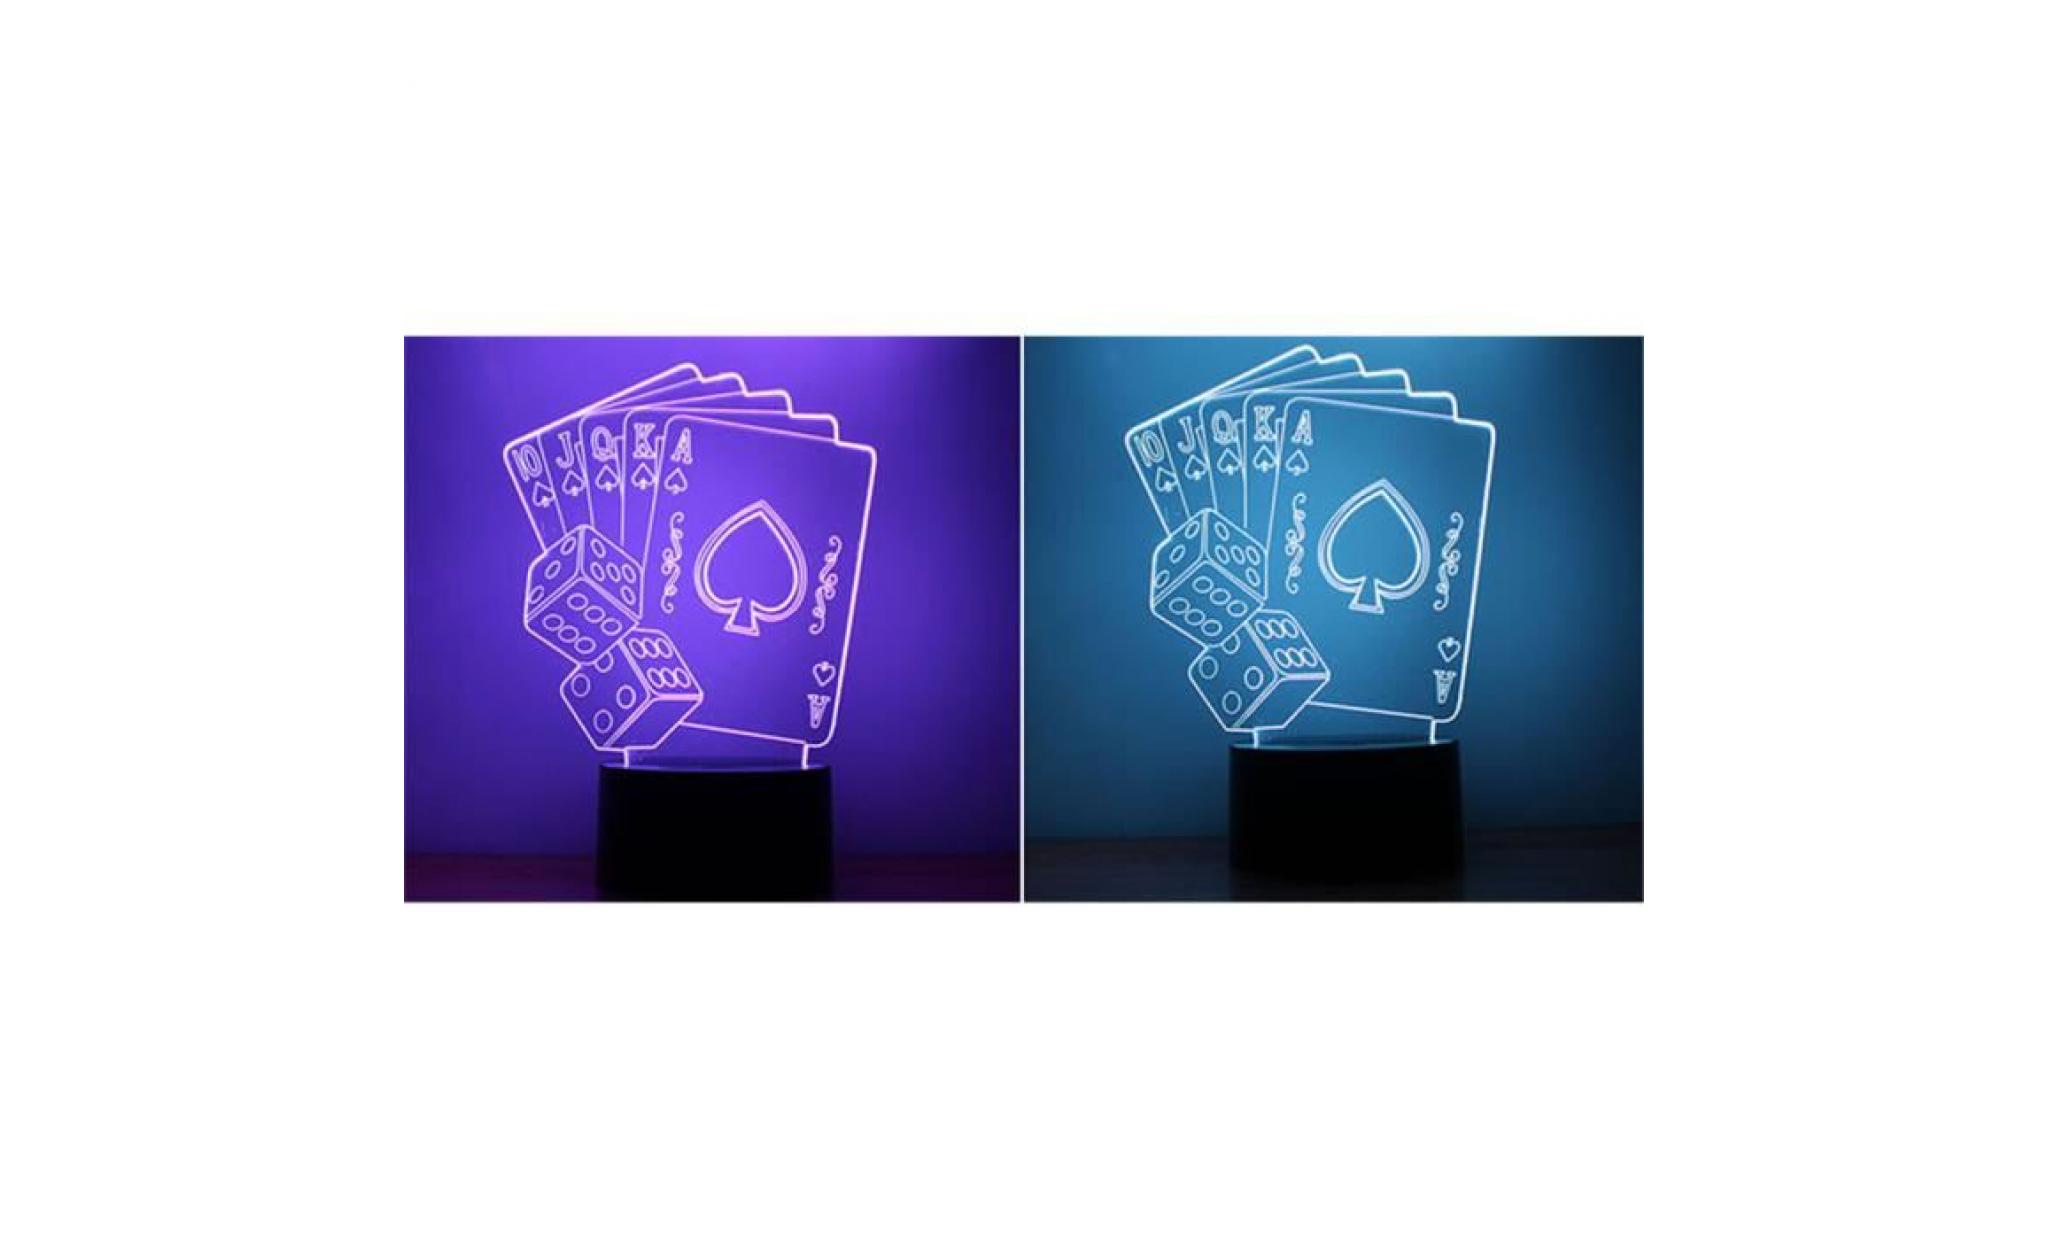 zmj70928463® illusion optique de lumières de la nuit led de la carte 3d de poker 3d couleurs pour la maison pas cher